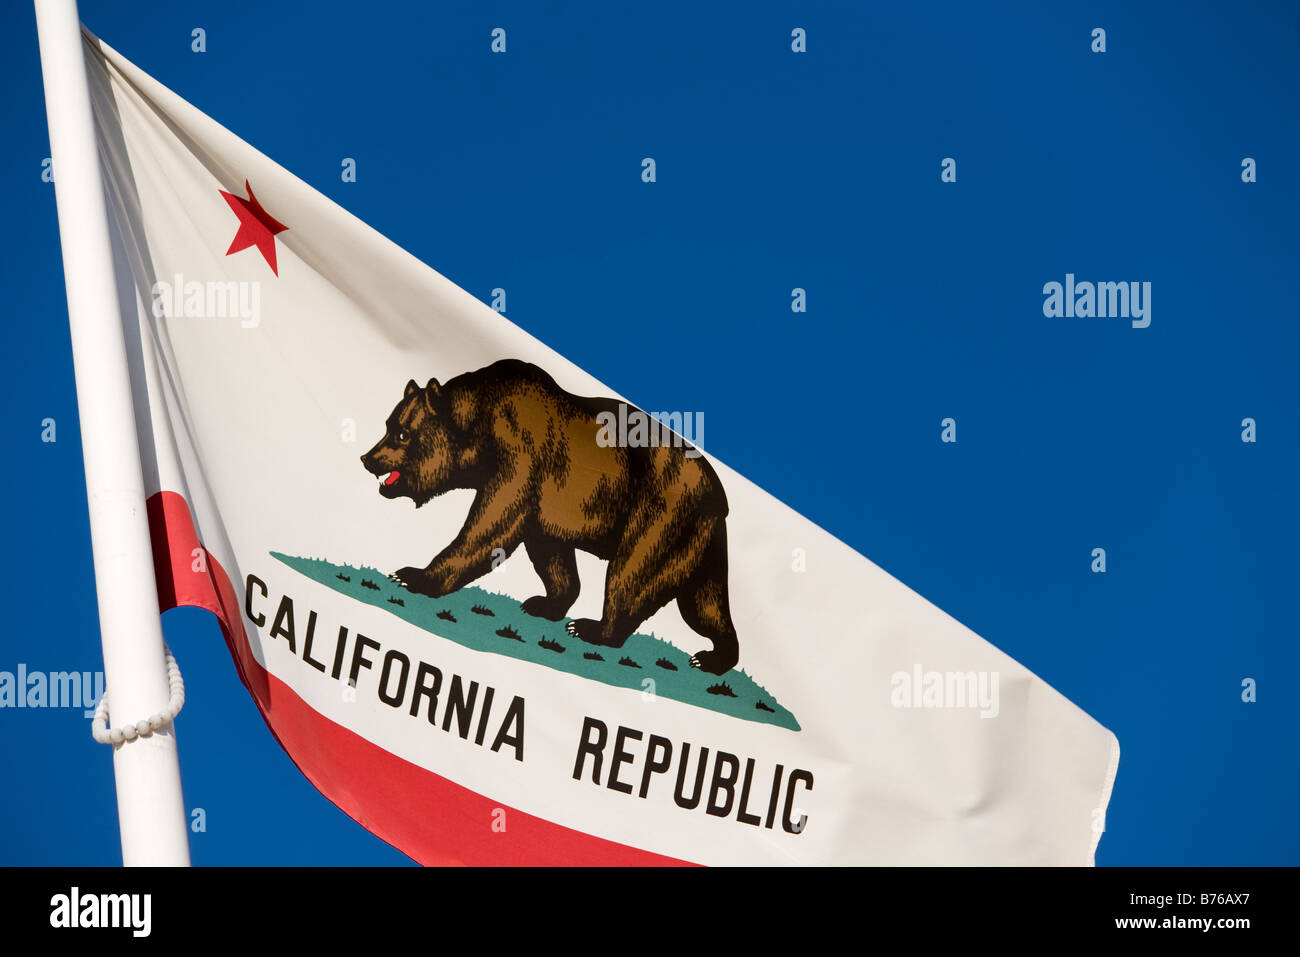 La bandera estatal de California o bandera del Estado Dorado, con la palabra 'California Republic' debajo de la estrella y el oso Foto de stock